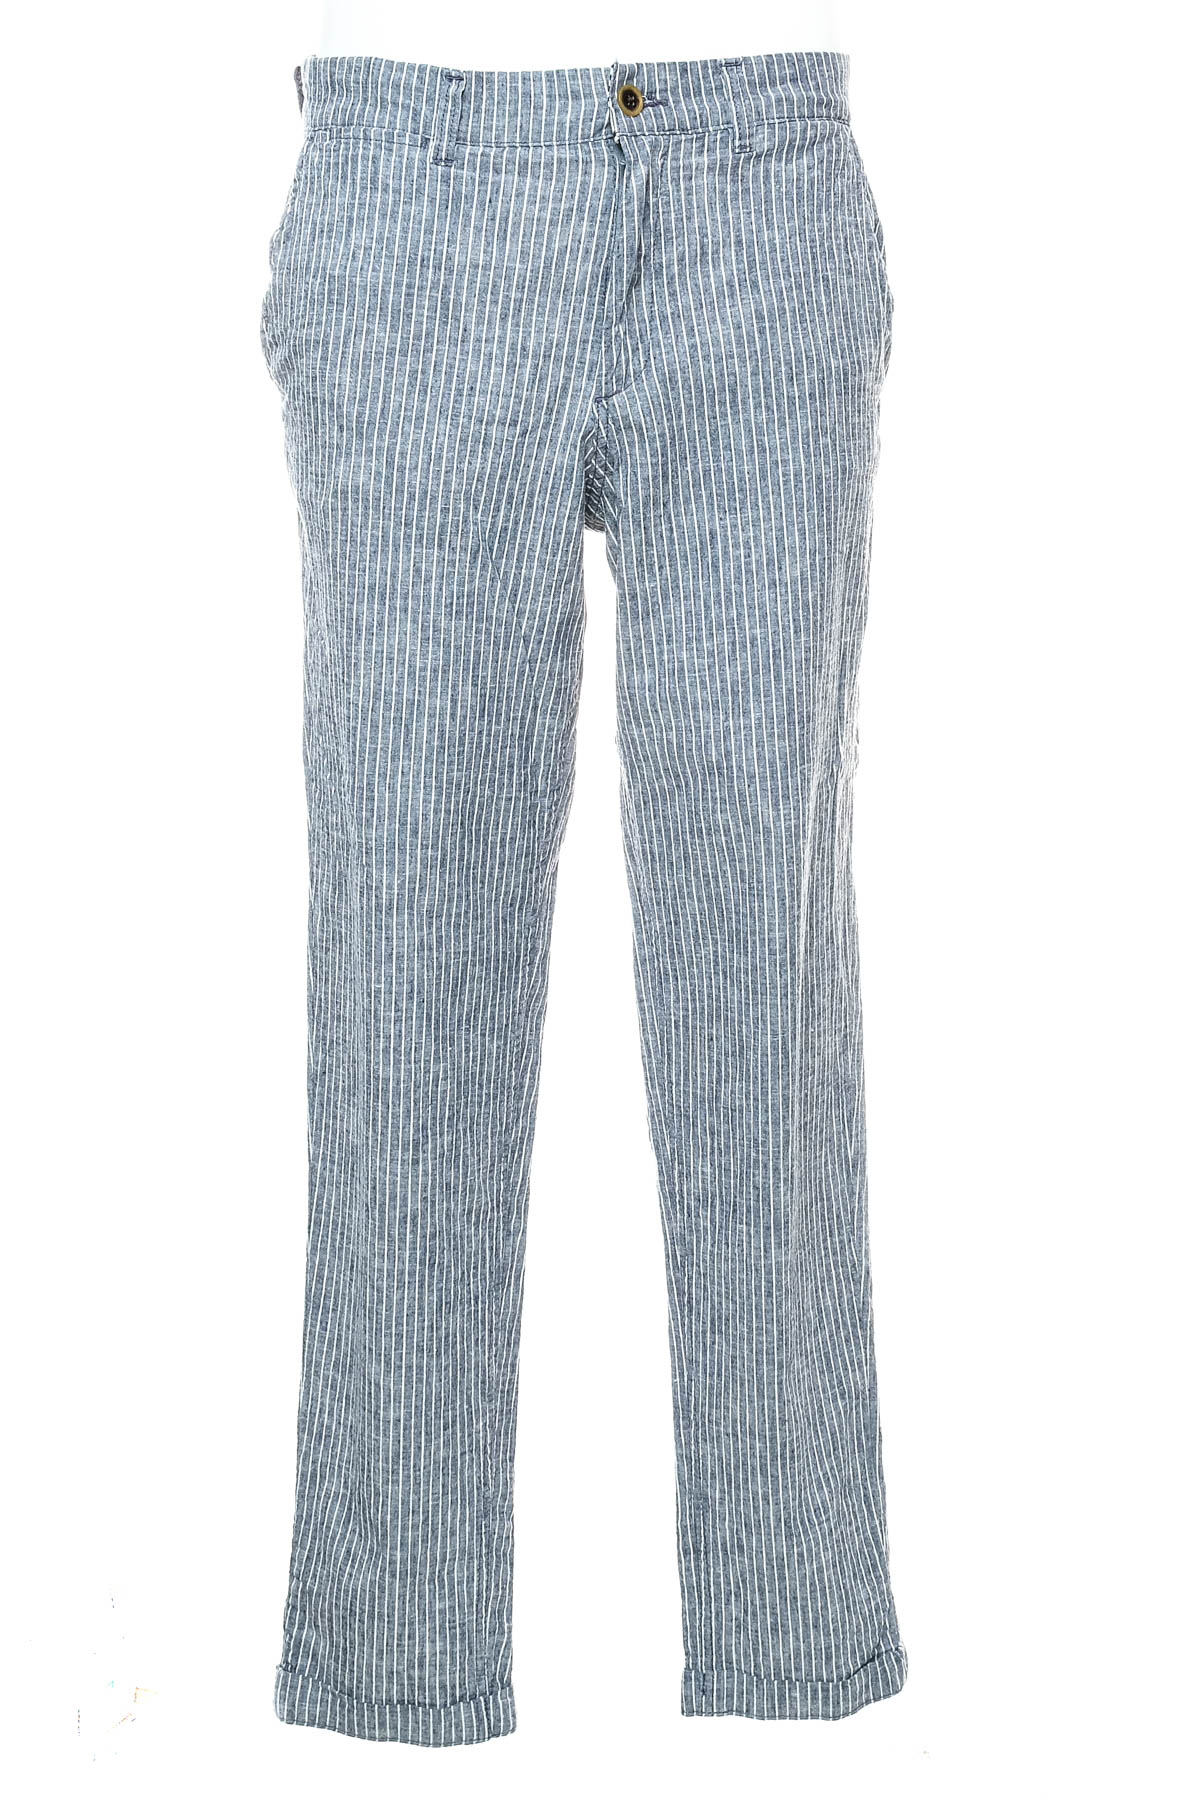 Ανδρικά παντελόνια - H&M - 0